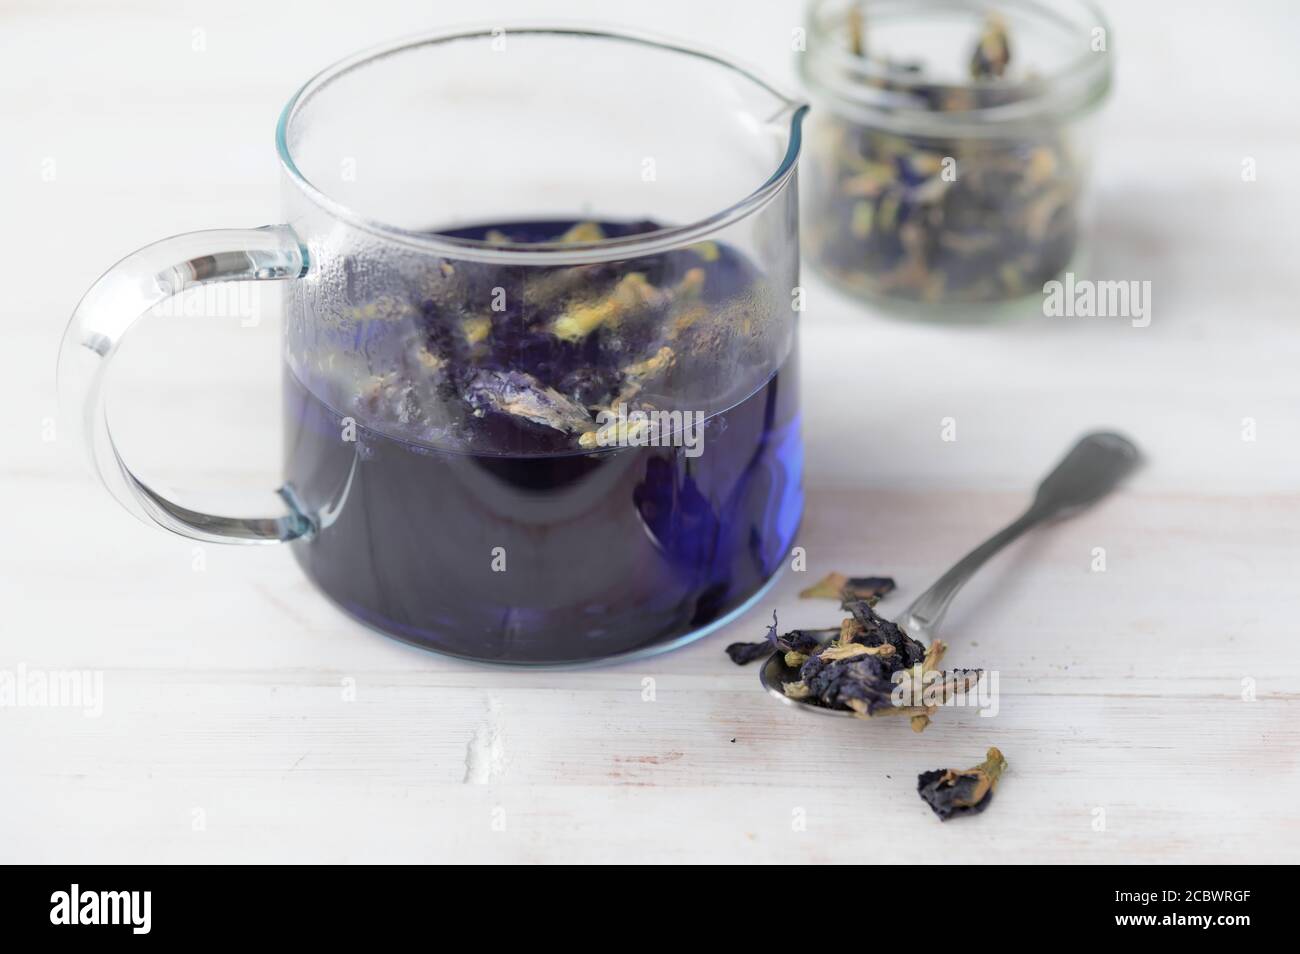 Preparing blue tea in a glass pot Stock Photo